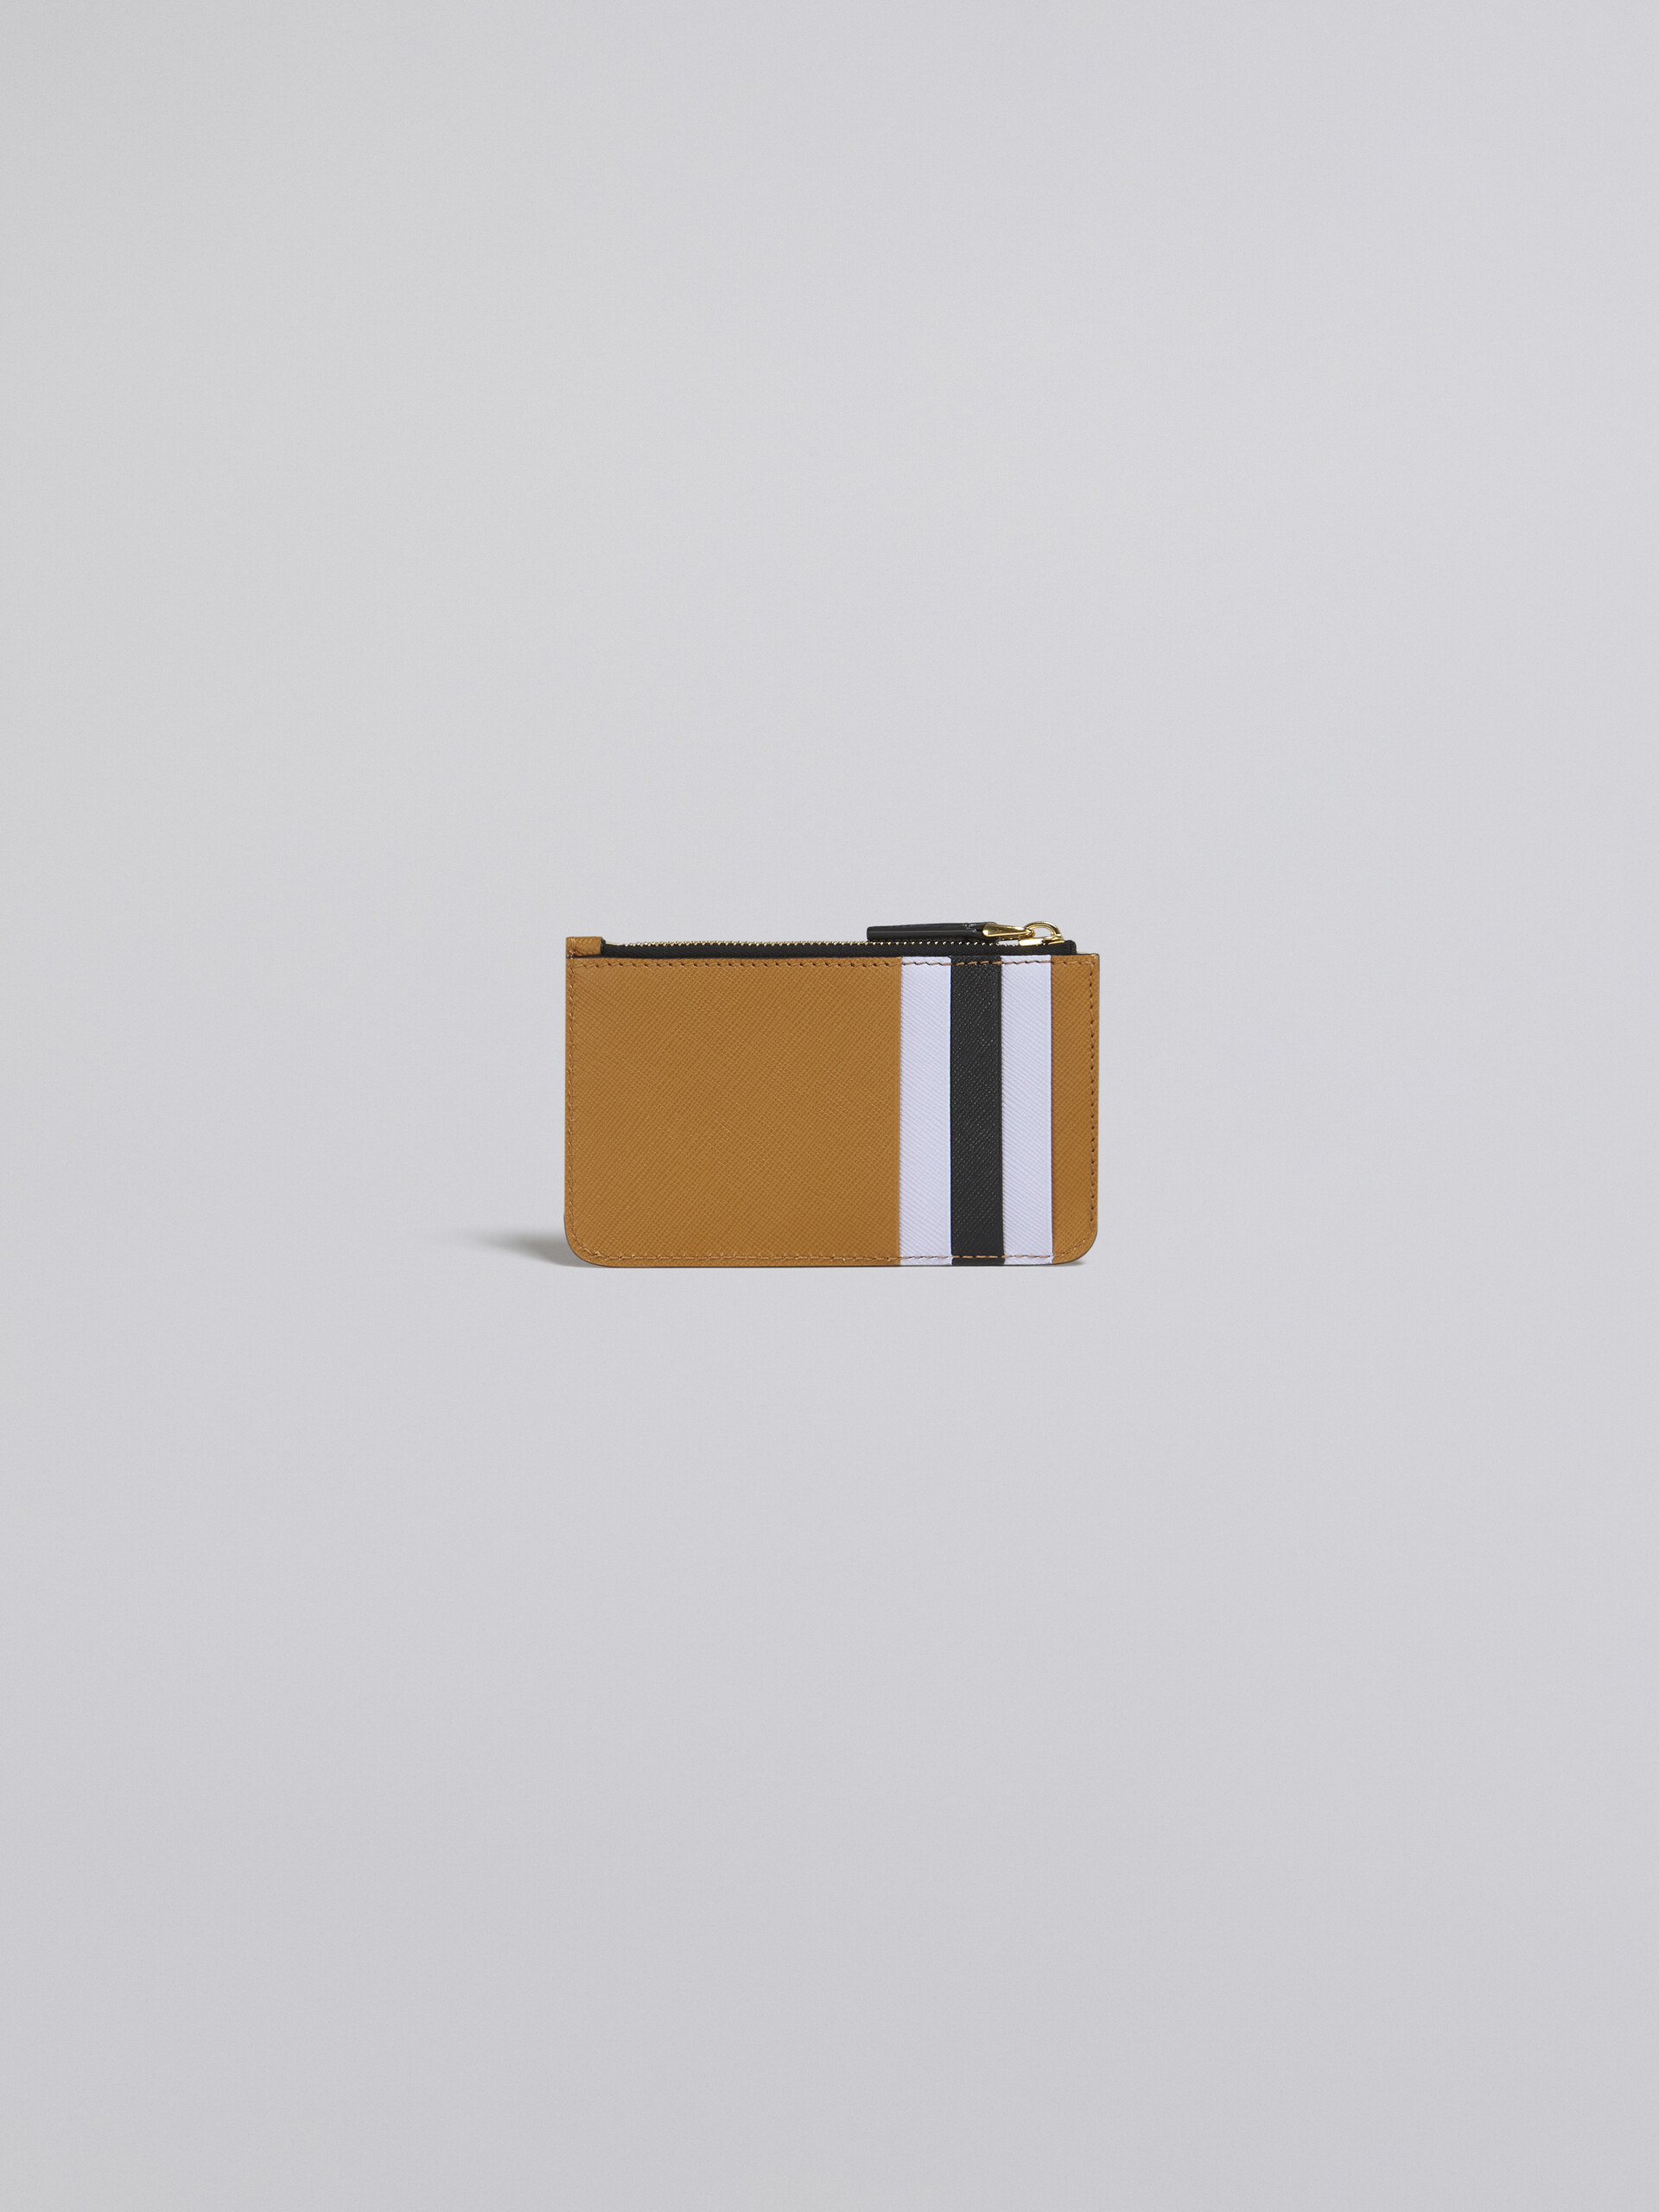 Porte-cartes en cuir saffiano brun, lilas et noir - Portefeuilles - Image 3